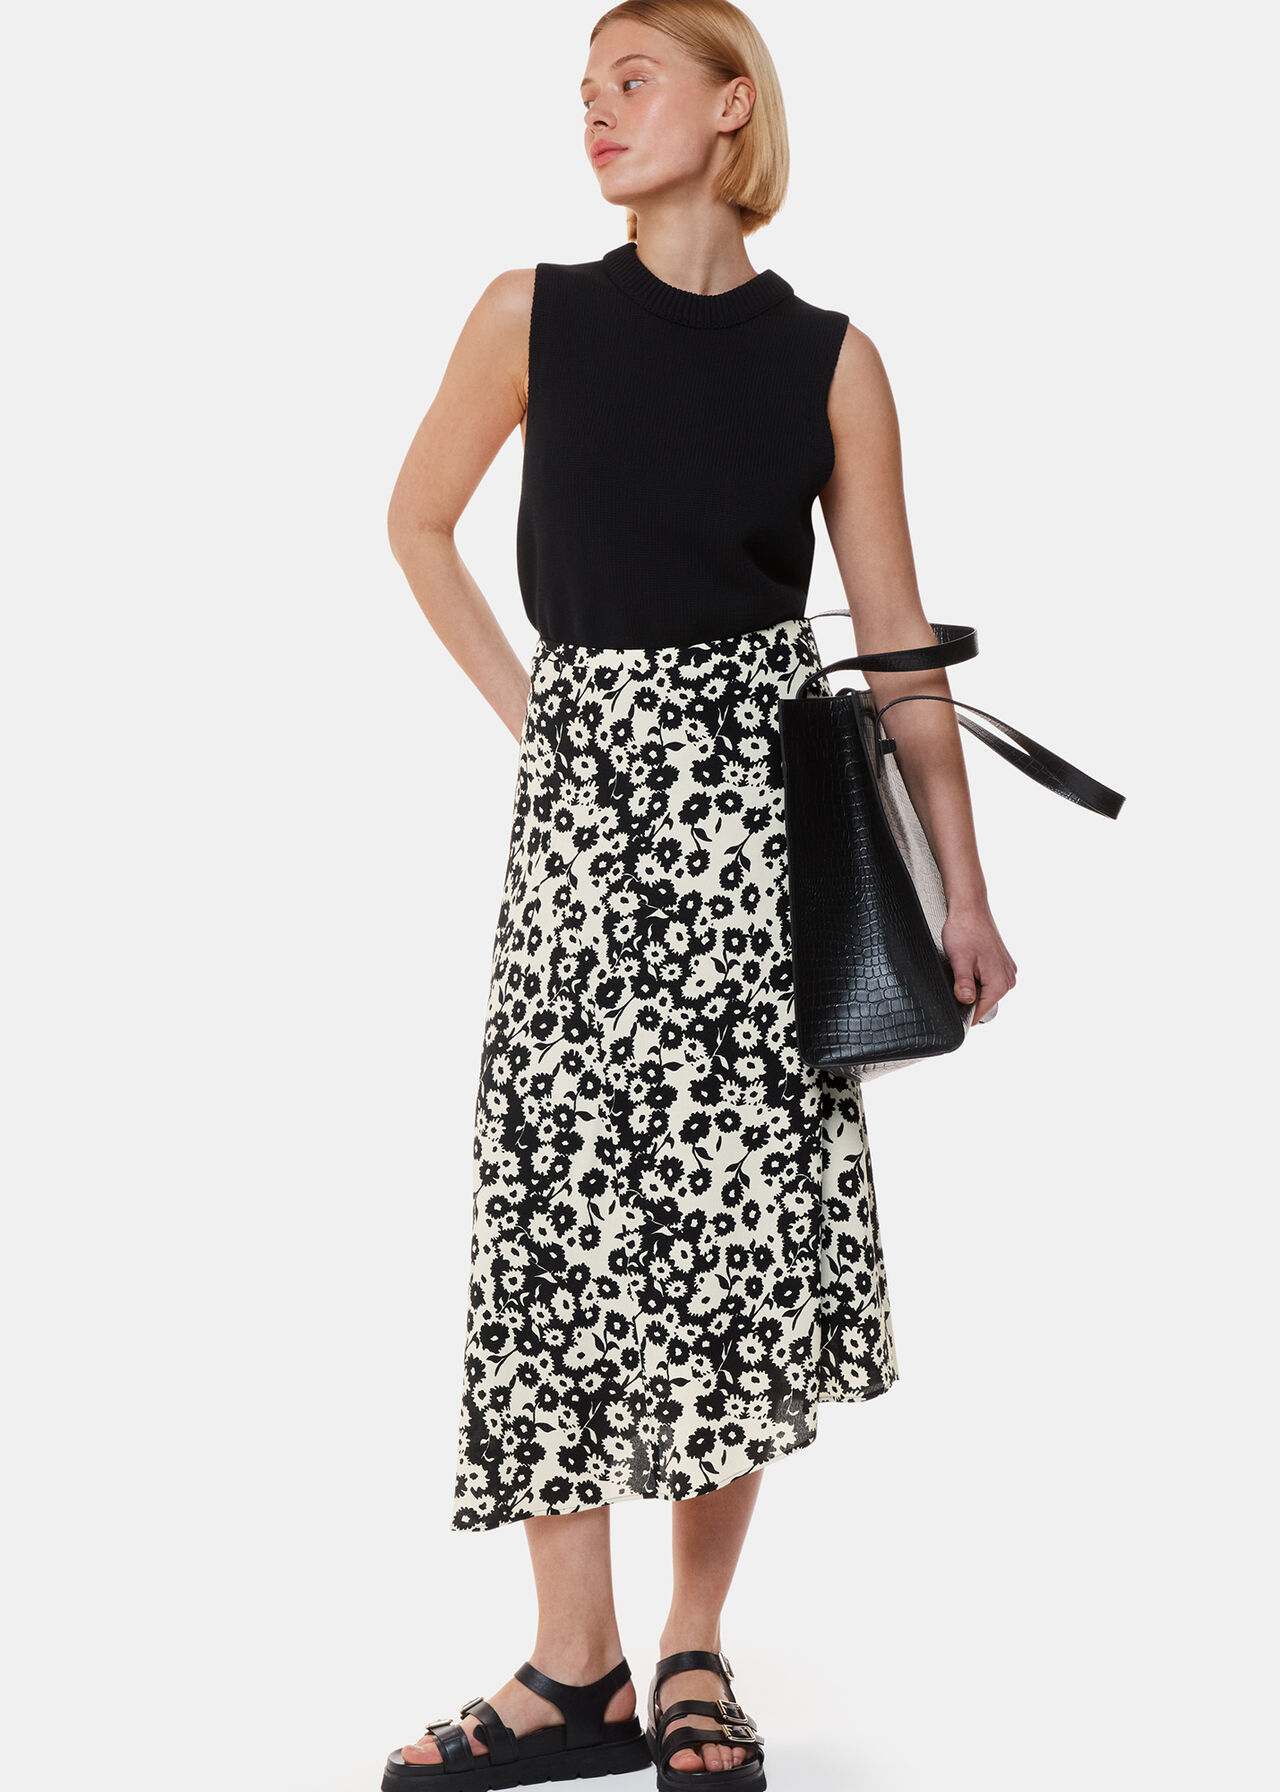 Black And White Riley Floral Print Skirt | WHISTLES | Whistles UK